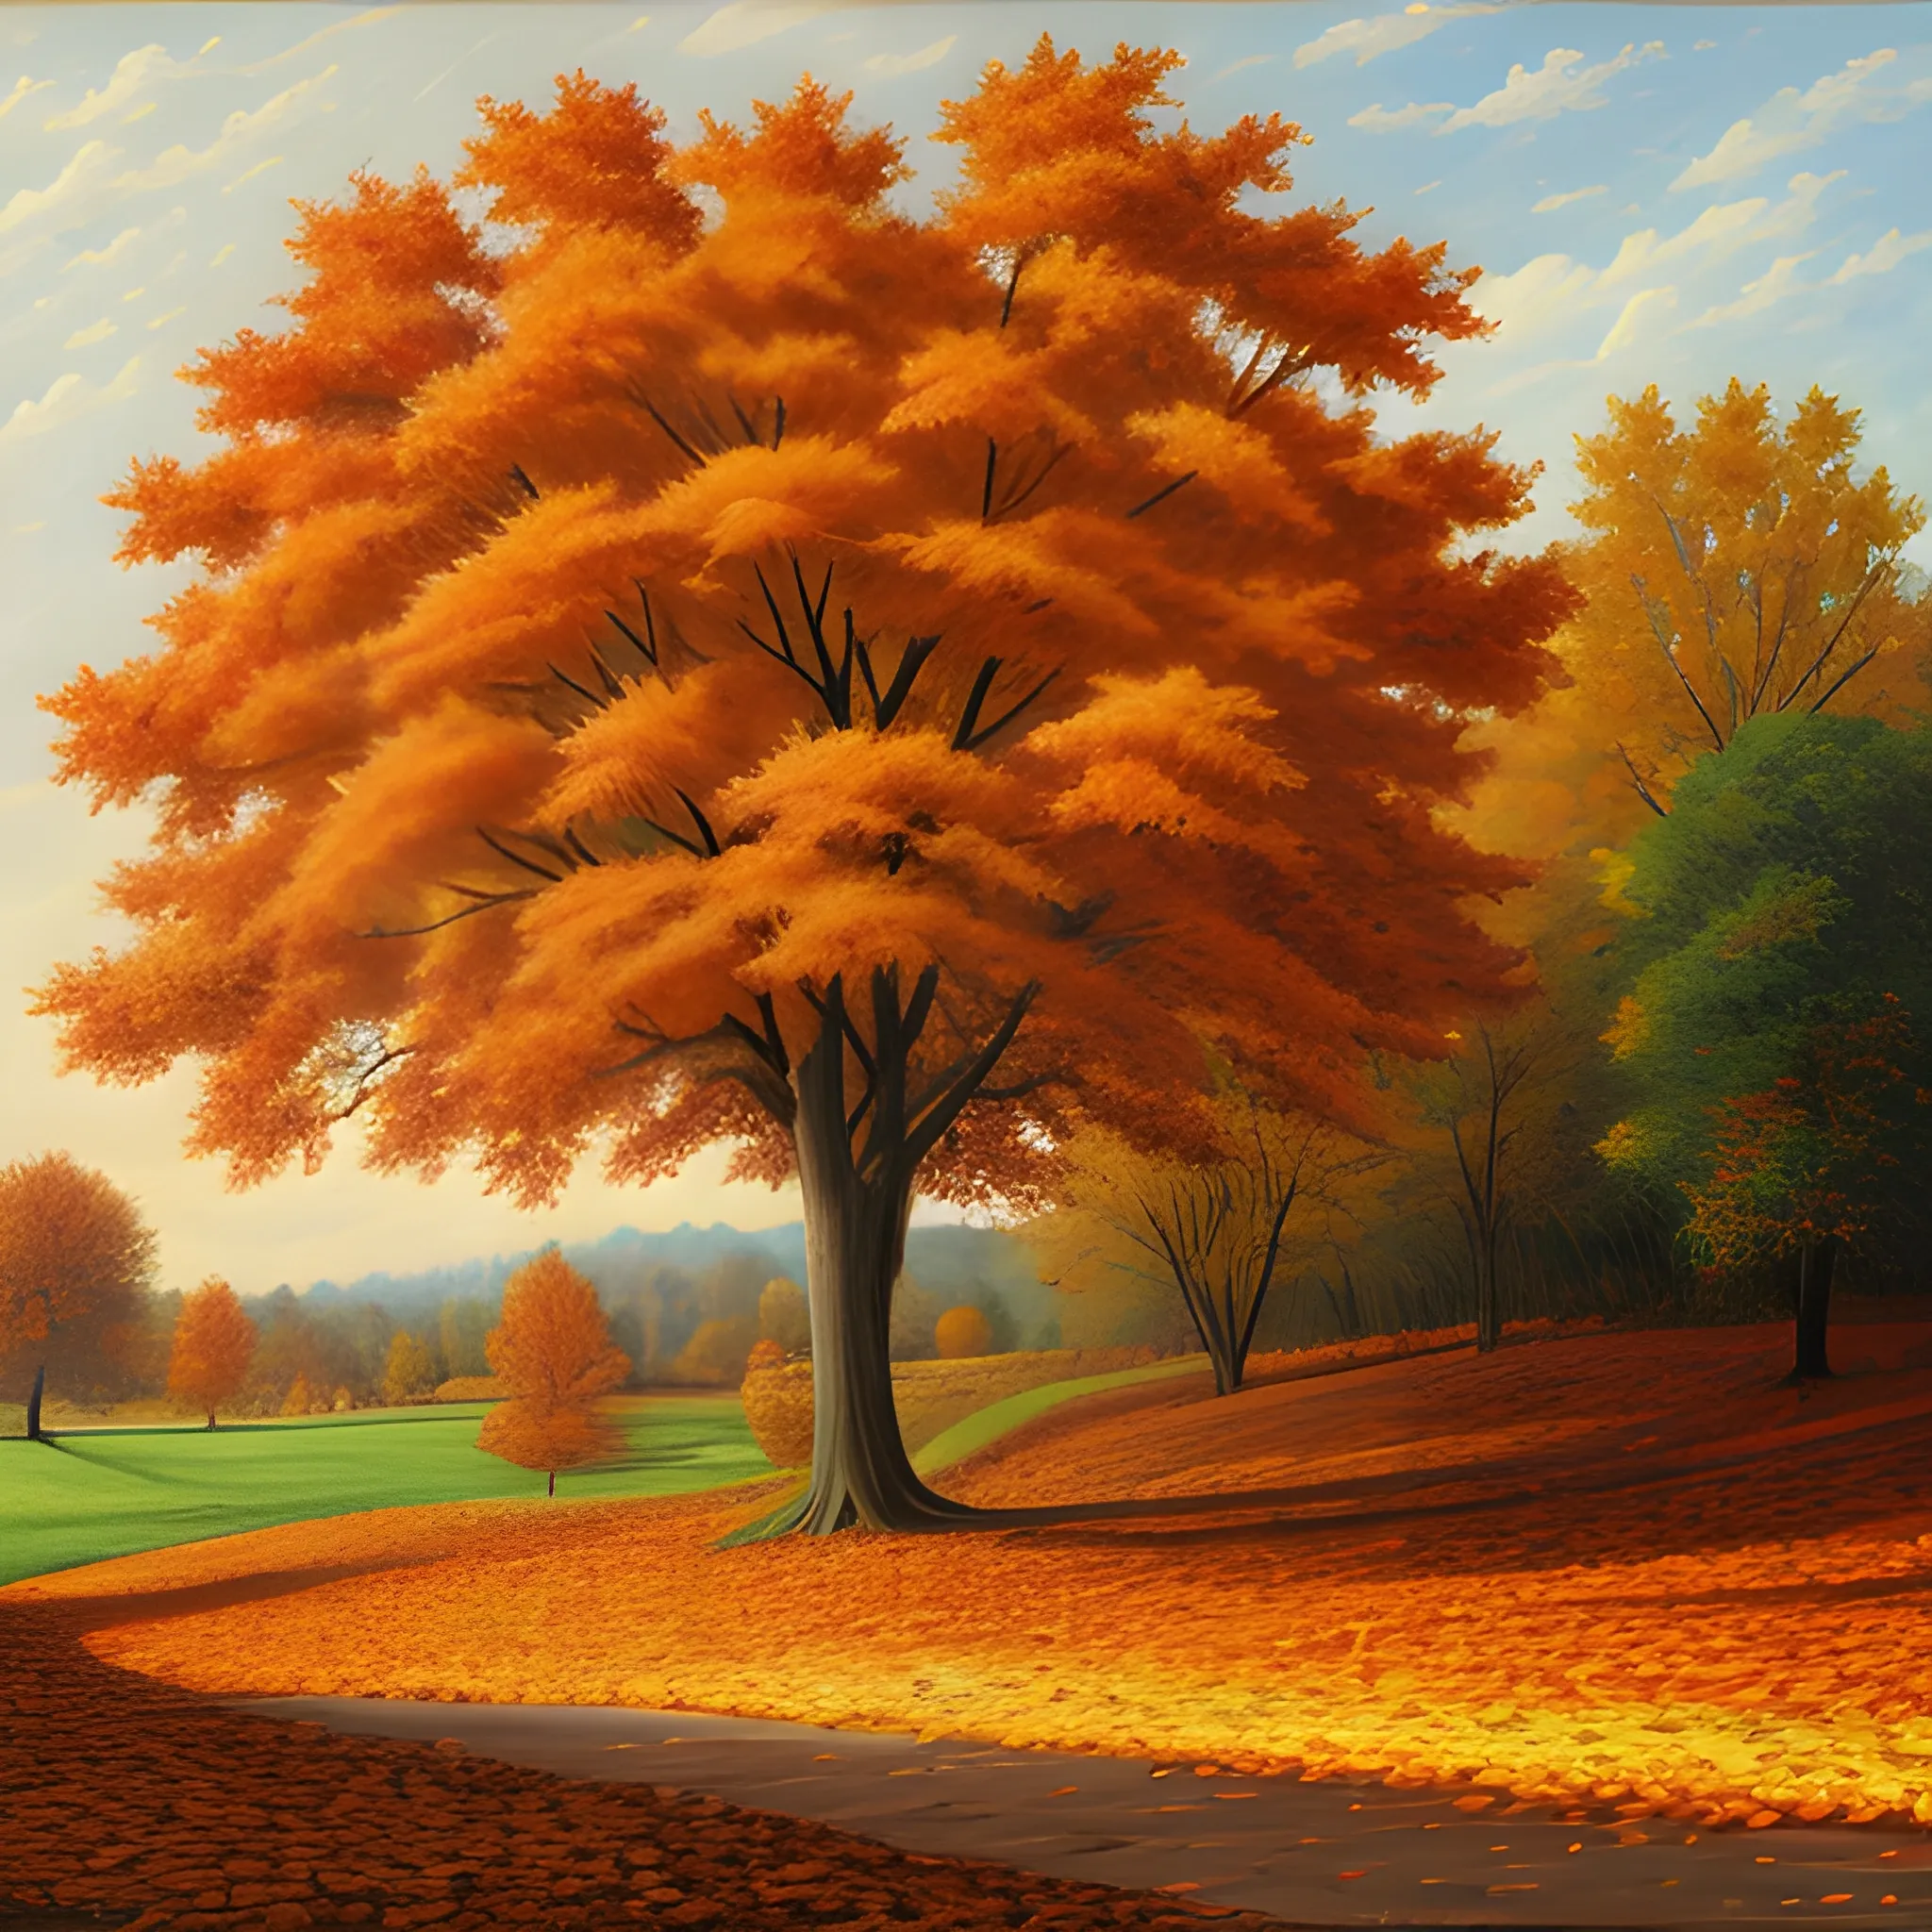 Autumn scene, the tree